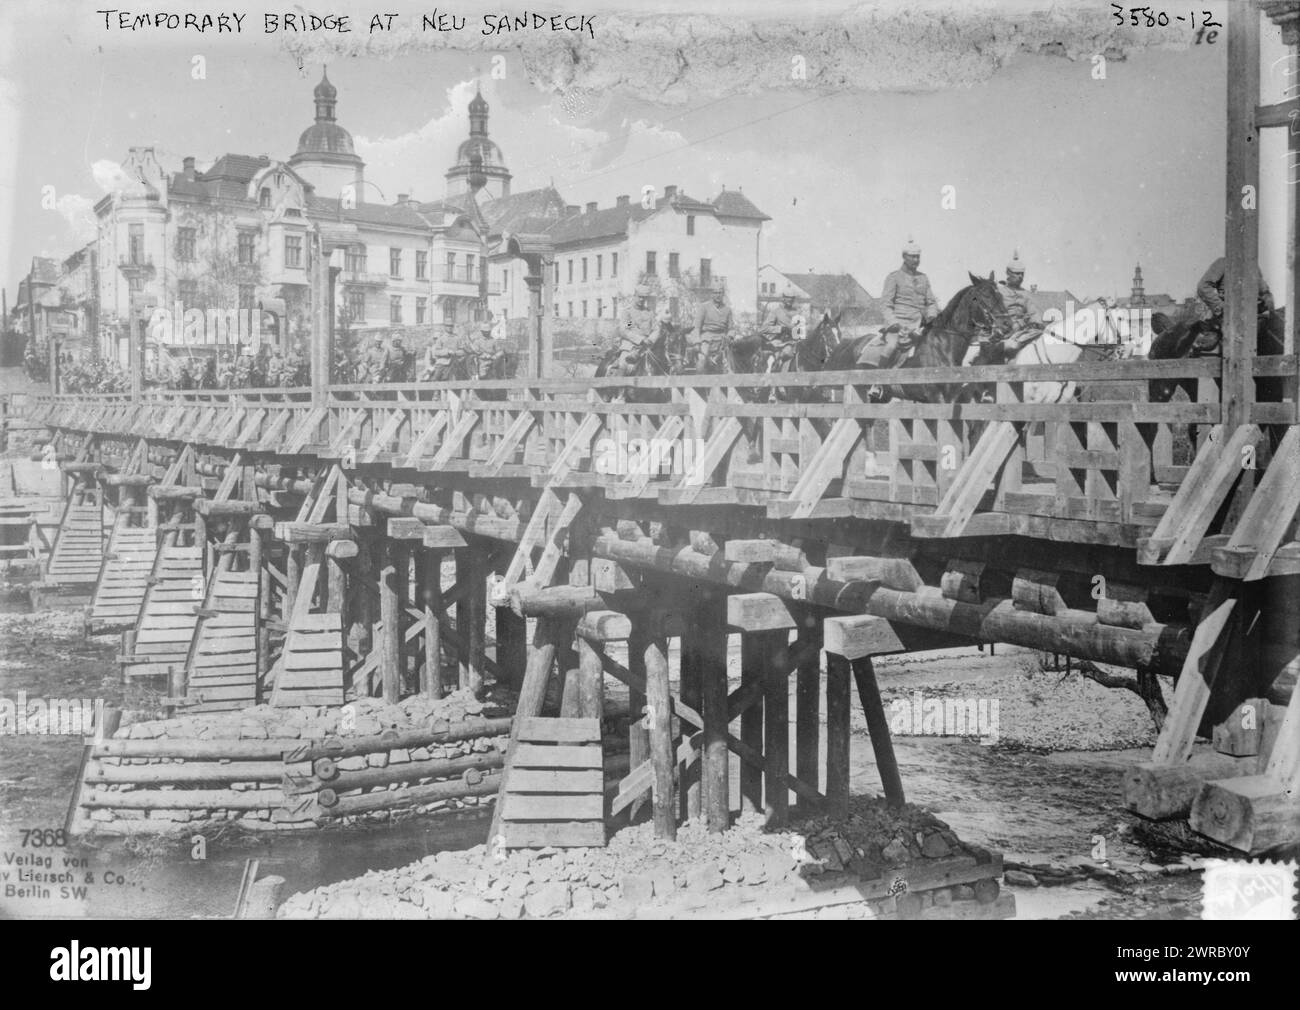 Pont temporaire à Neu Sandeck, la photographie montre un pont à Nowy Saqcz, Pologne (anciennement Neu Sandec, Galice) pendant la première Guerre mondiale, entre env. 1910 et env. 1915, Guerre mondiale, 1914-1918, négatifs en verre, 1 négatif : verre Banque D'Images